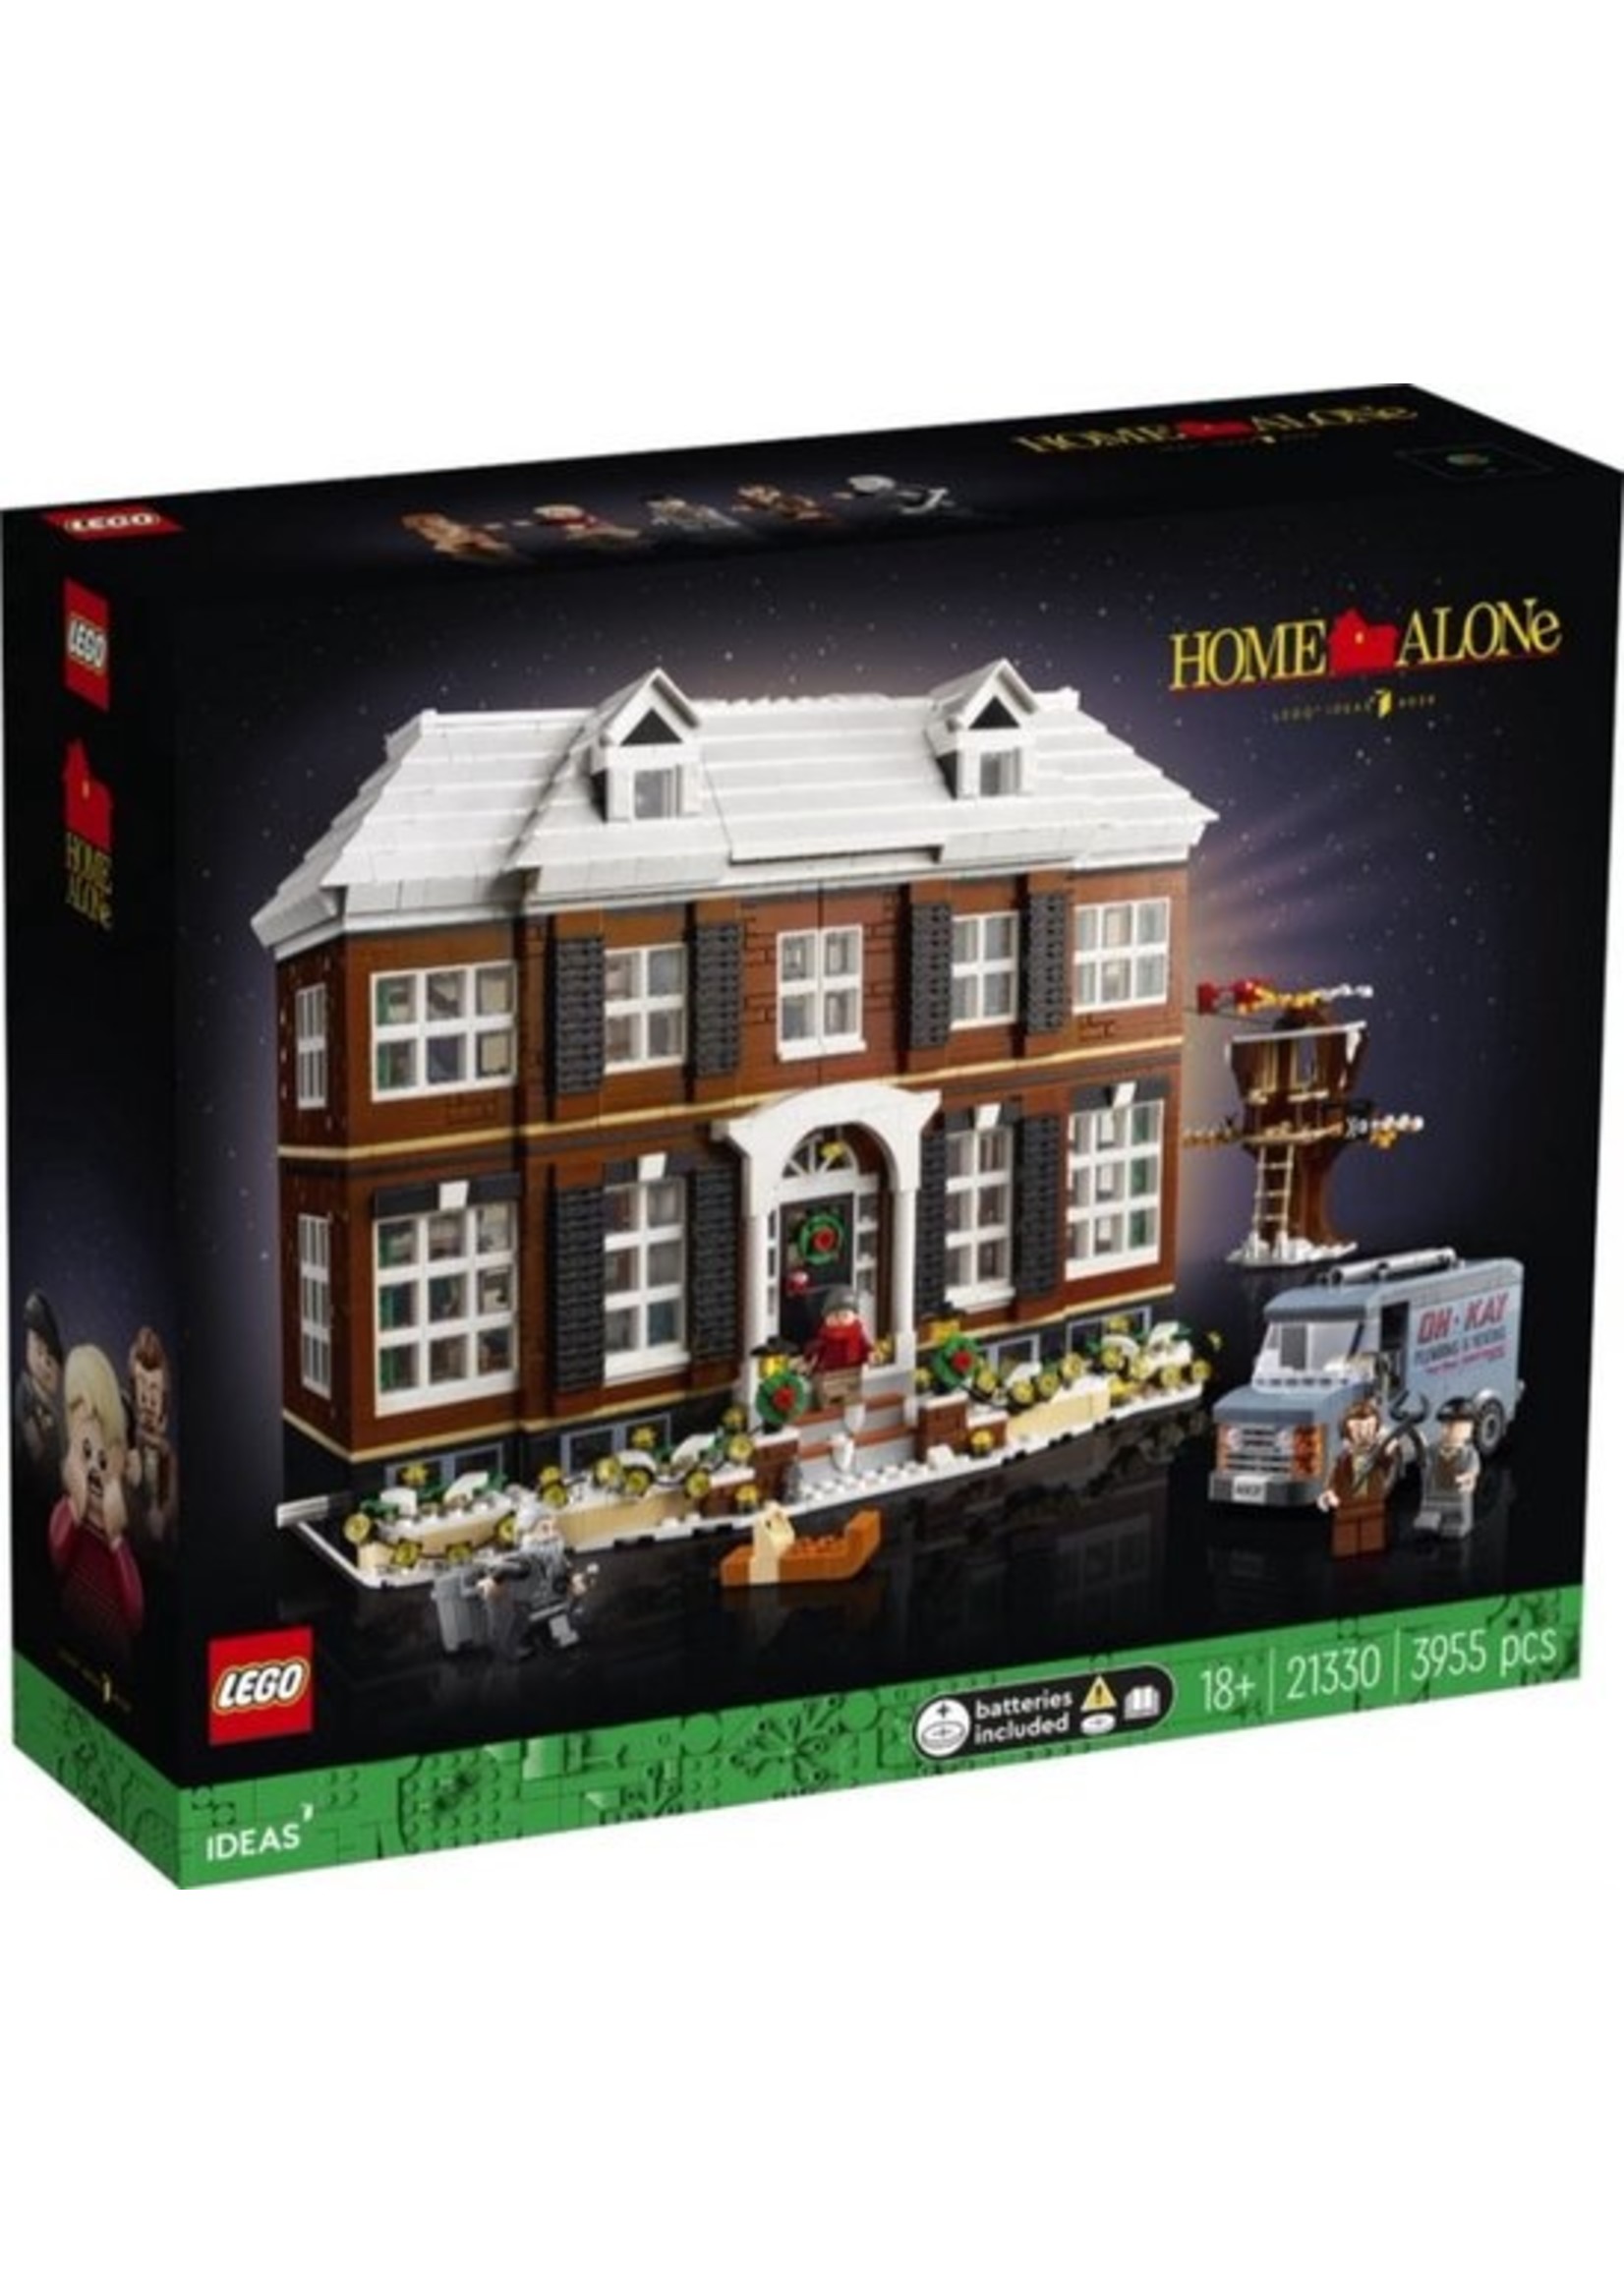 Lego LEGO Ideas Home Alone - 21330